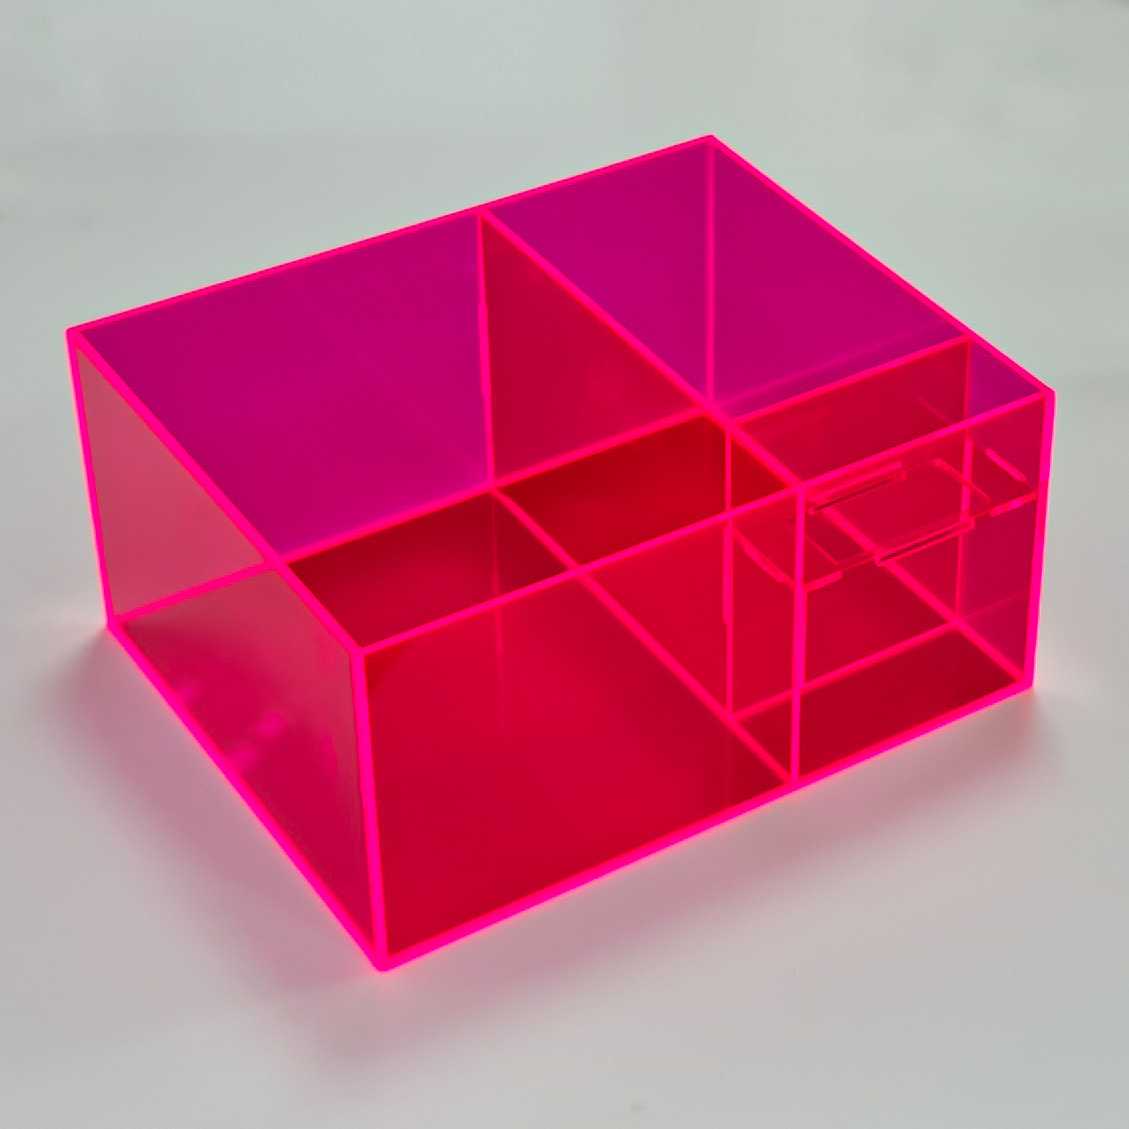 Cubo contenedor metacrilato